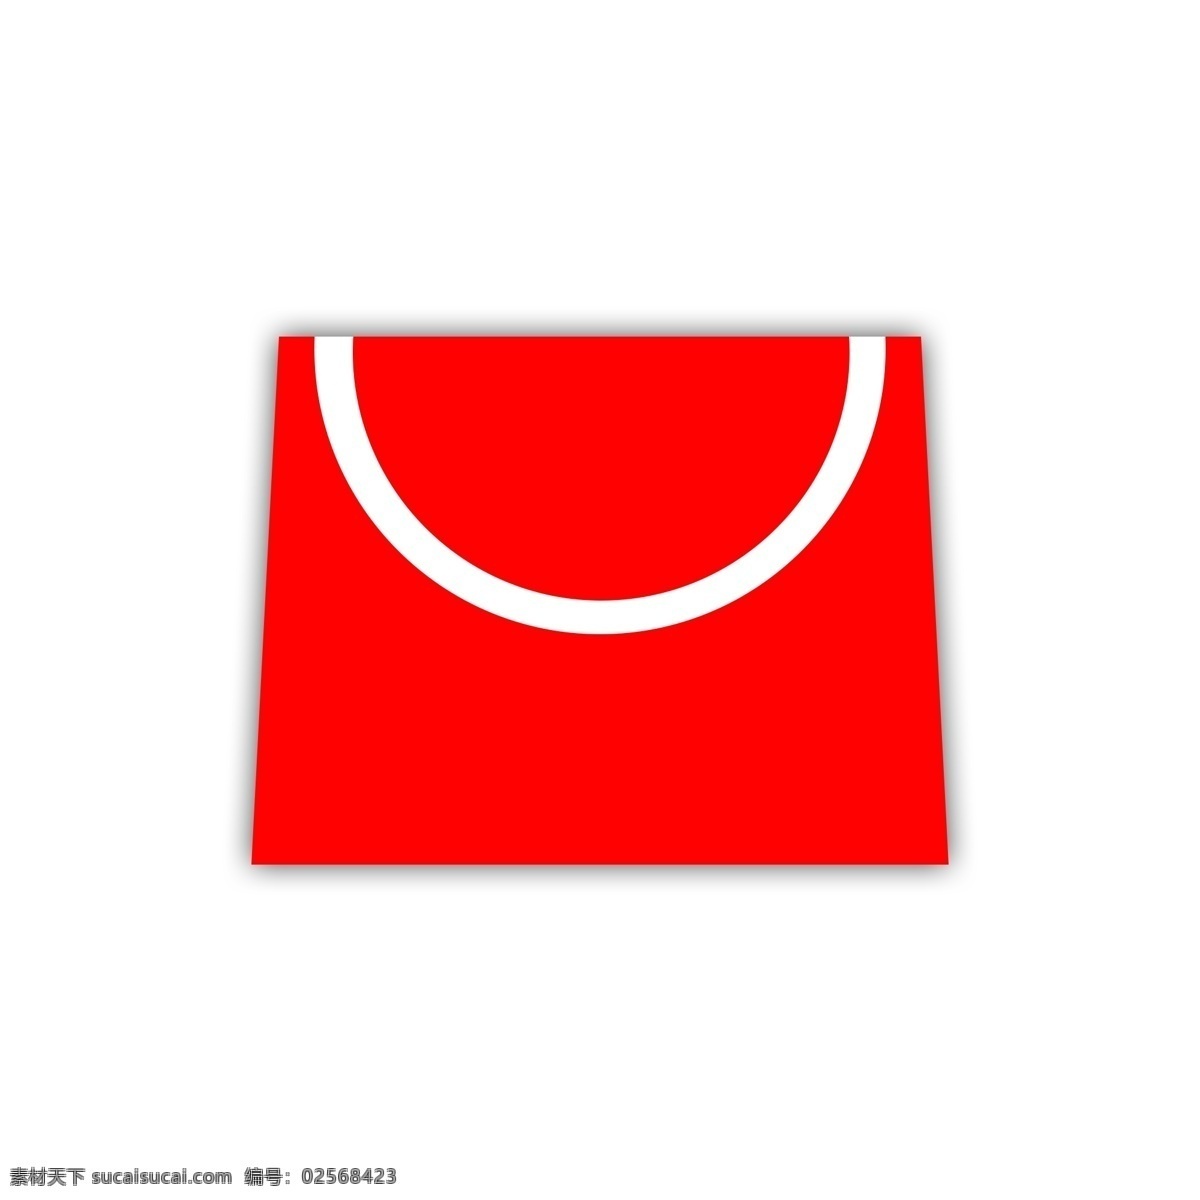 红色 梯形 购物袋 原创 创意 工具 简约 时尚 卡通 扁平 超市 商场 卖场 共享卡通风 生活百科 生活用品